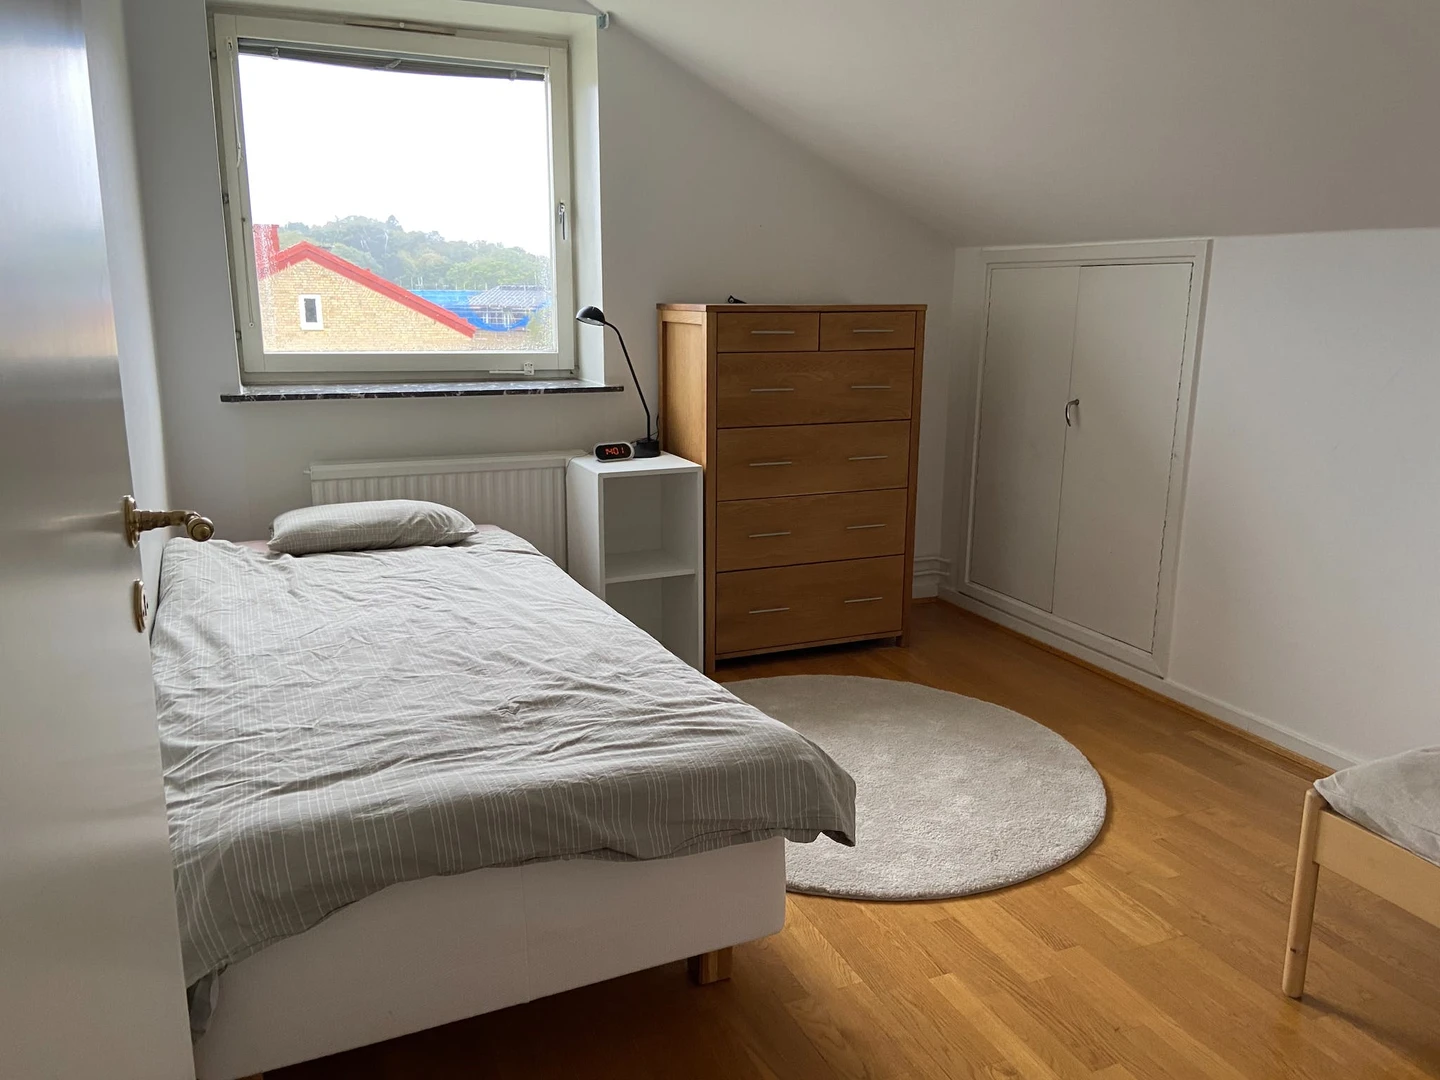 Alquiler de habitación en piso compartido en Gotemburgo